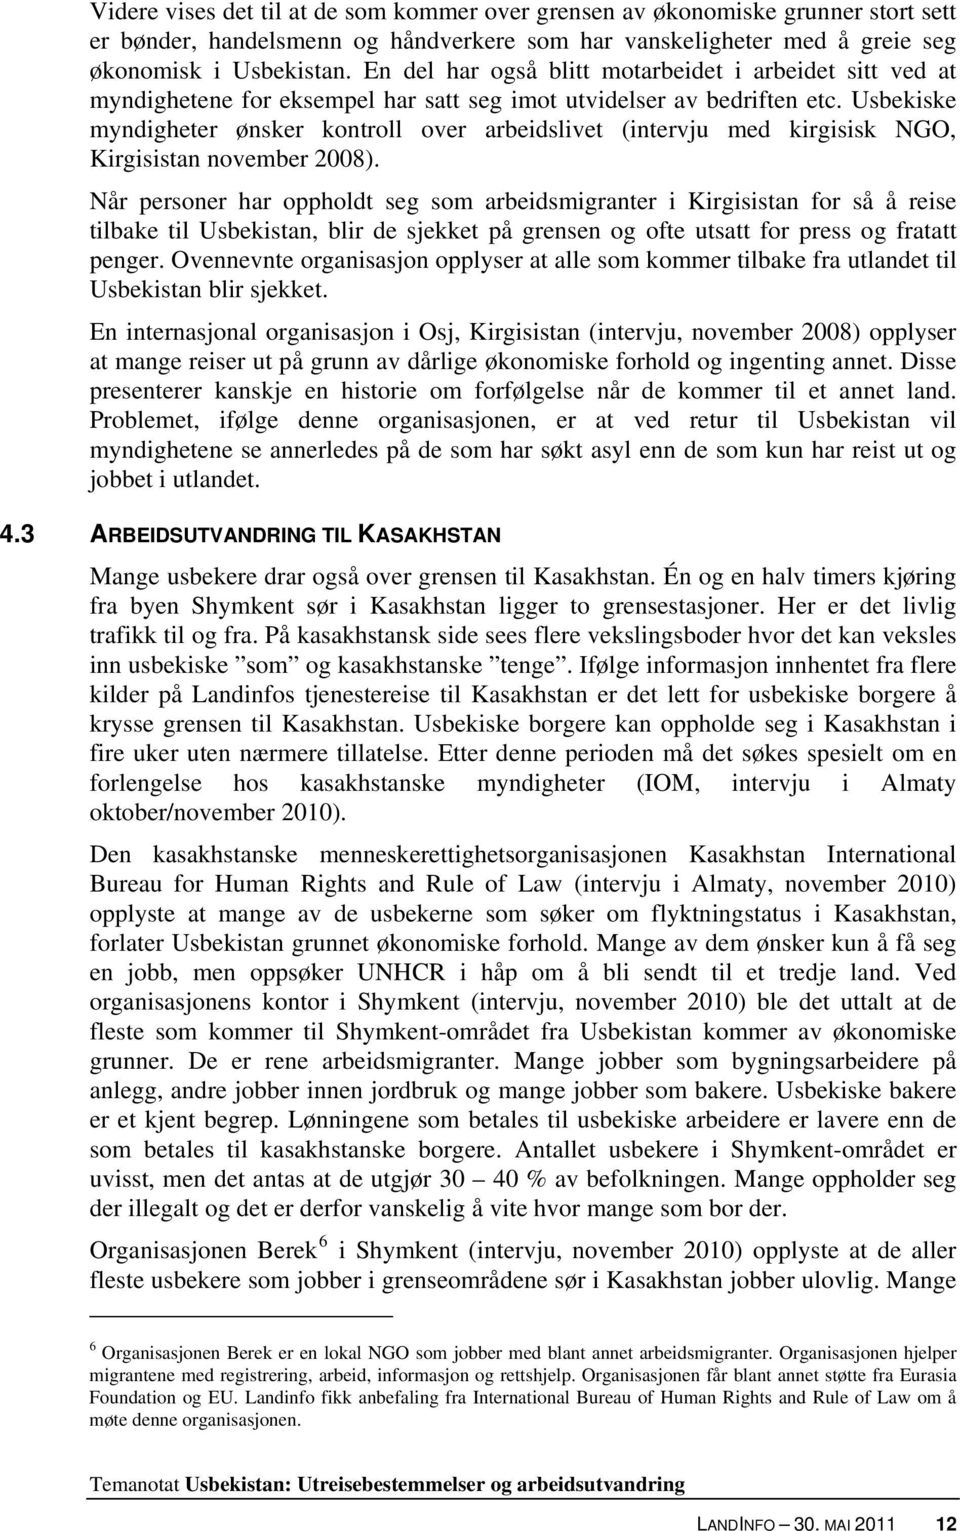 Usbekiske myndigheter ønsker kontroll over arbeidslivet (intervju med kirgisisk NGO, Kirgisistan november 2008).